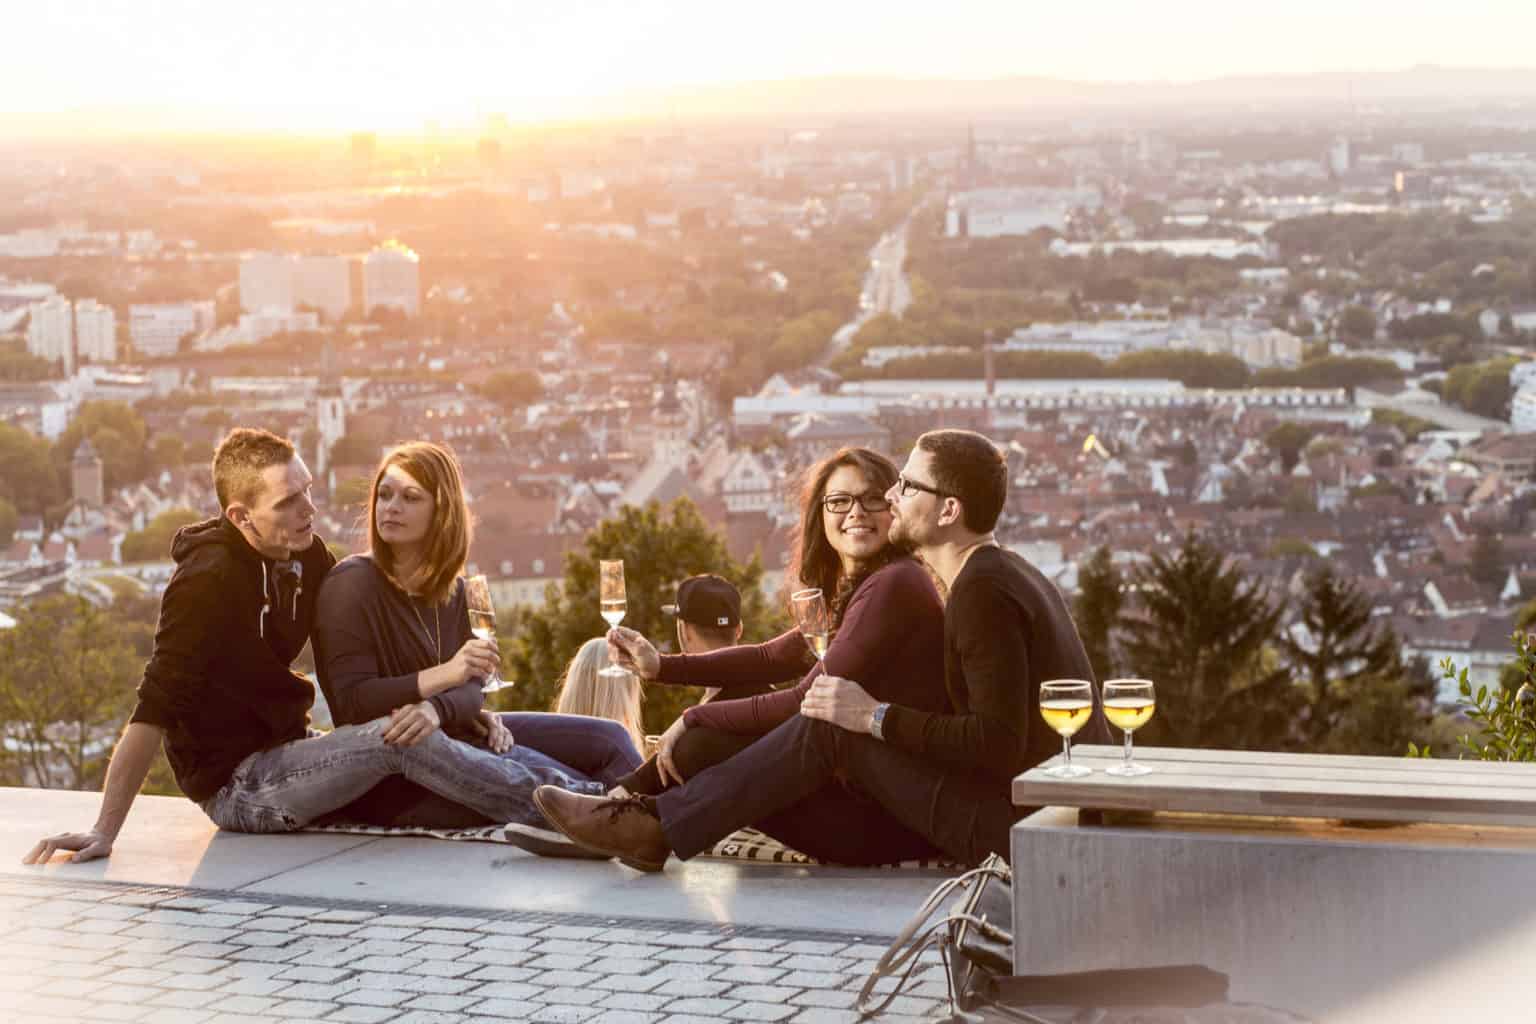 Karlsruhe de warmste stadt van Duitsland met jonge mensen die wijn drinken